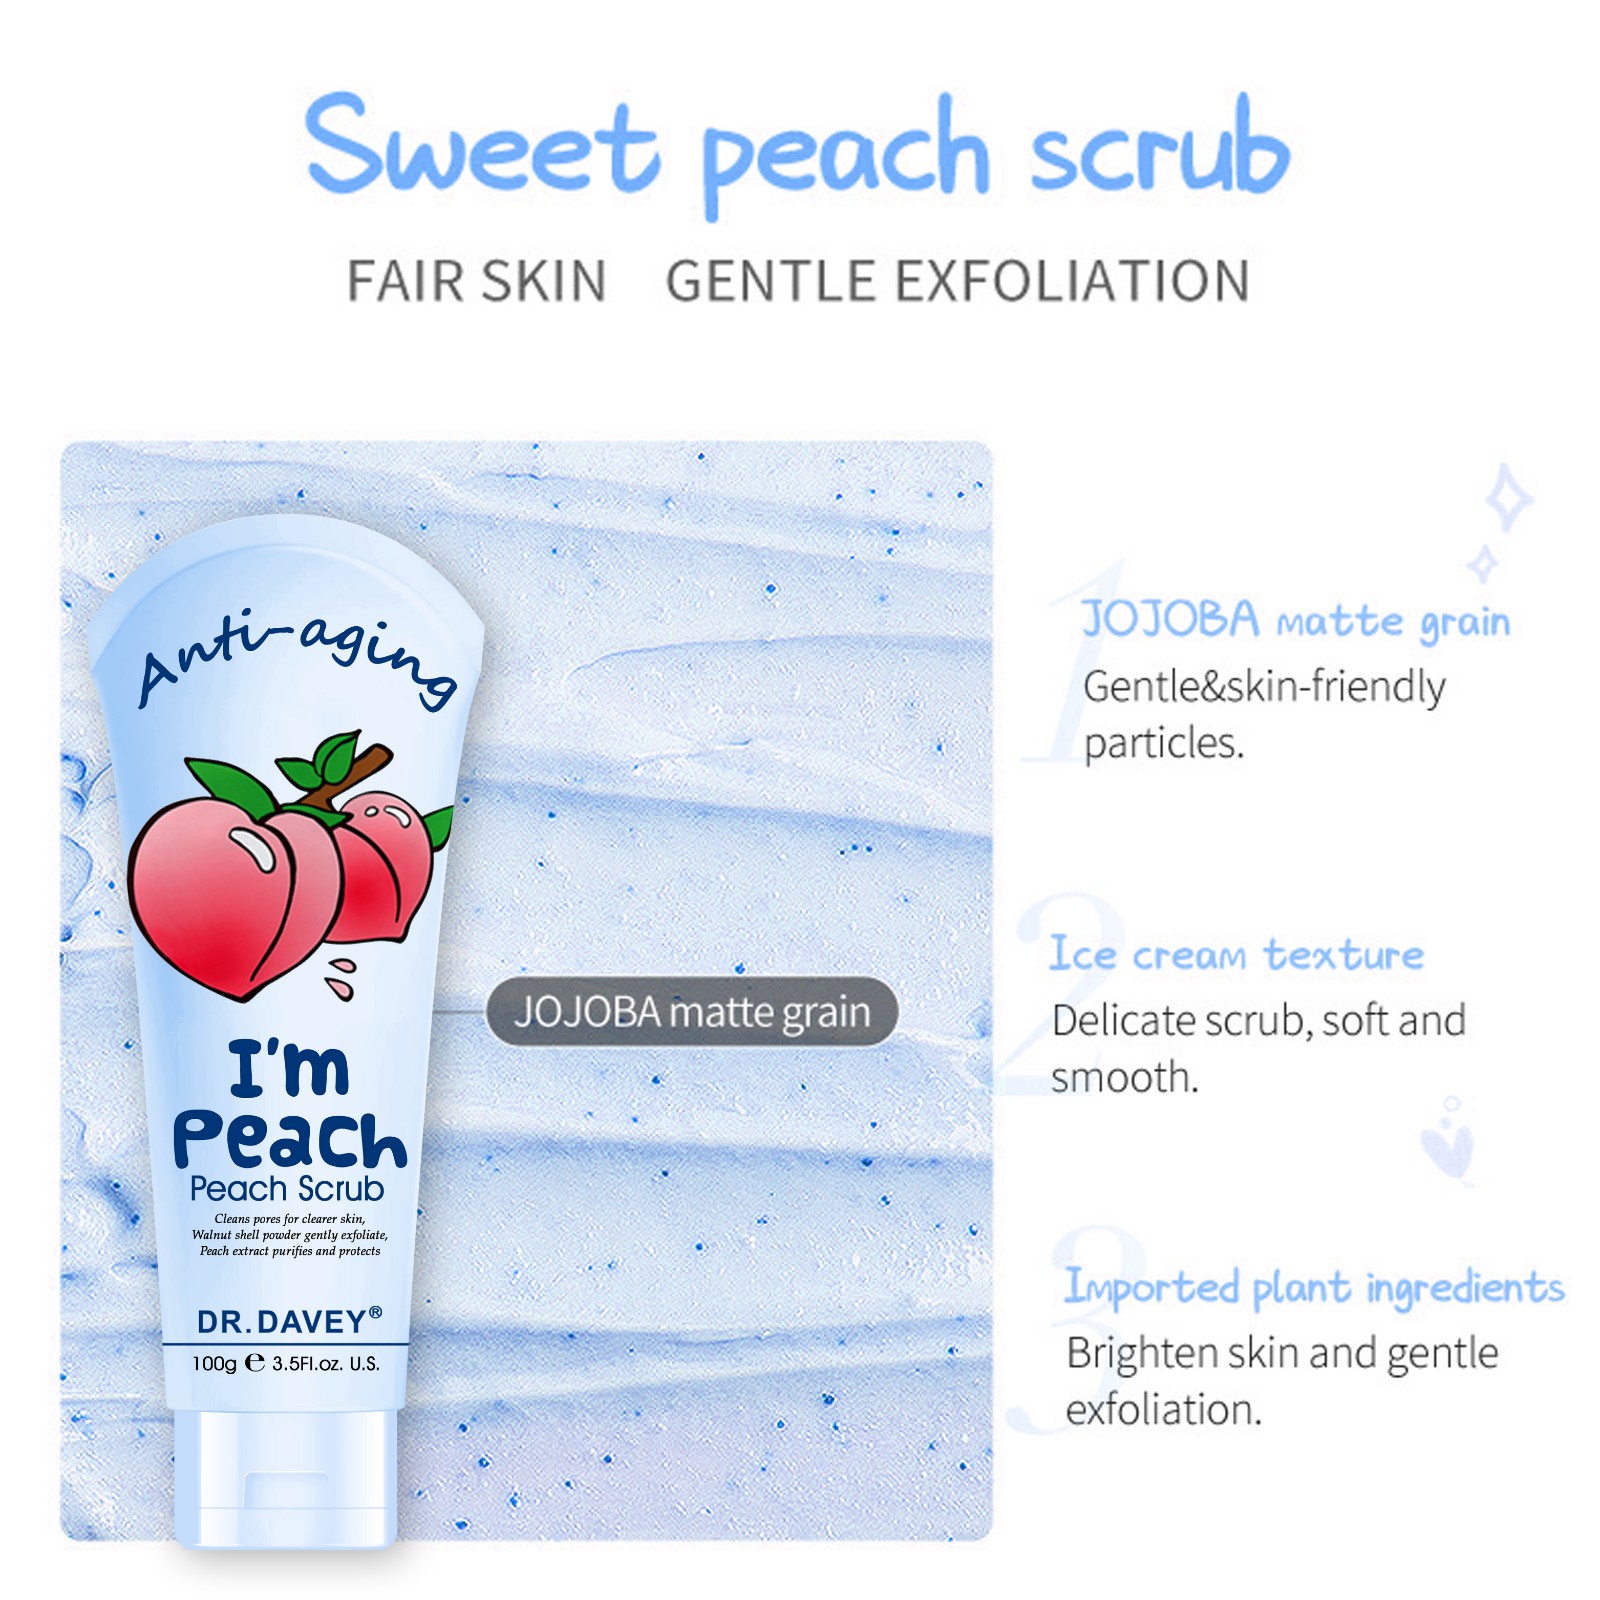 Peach scrub